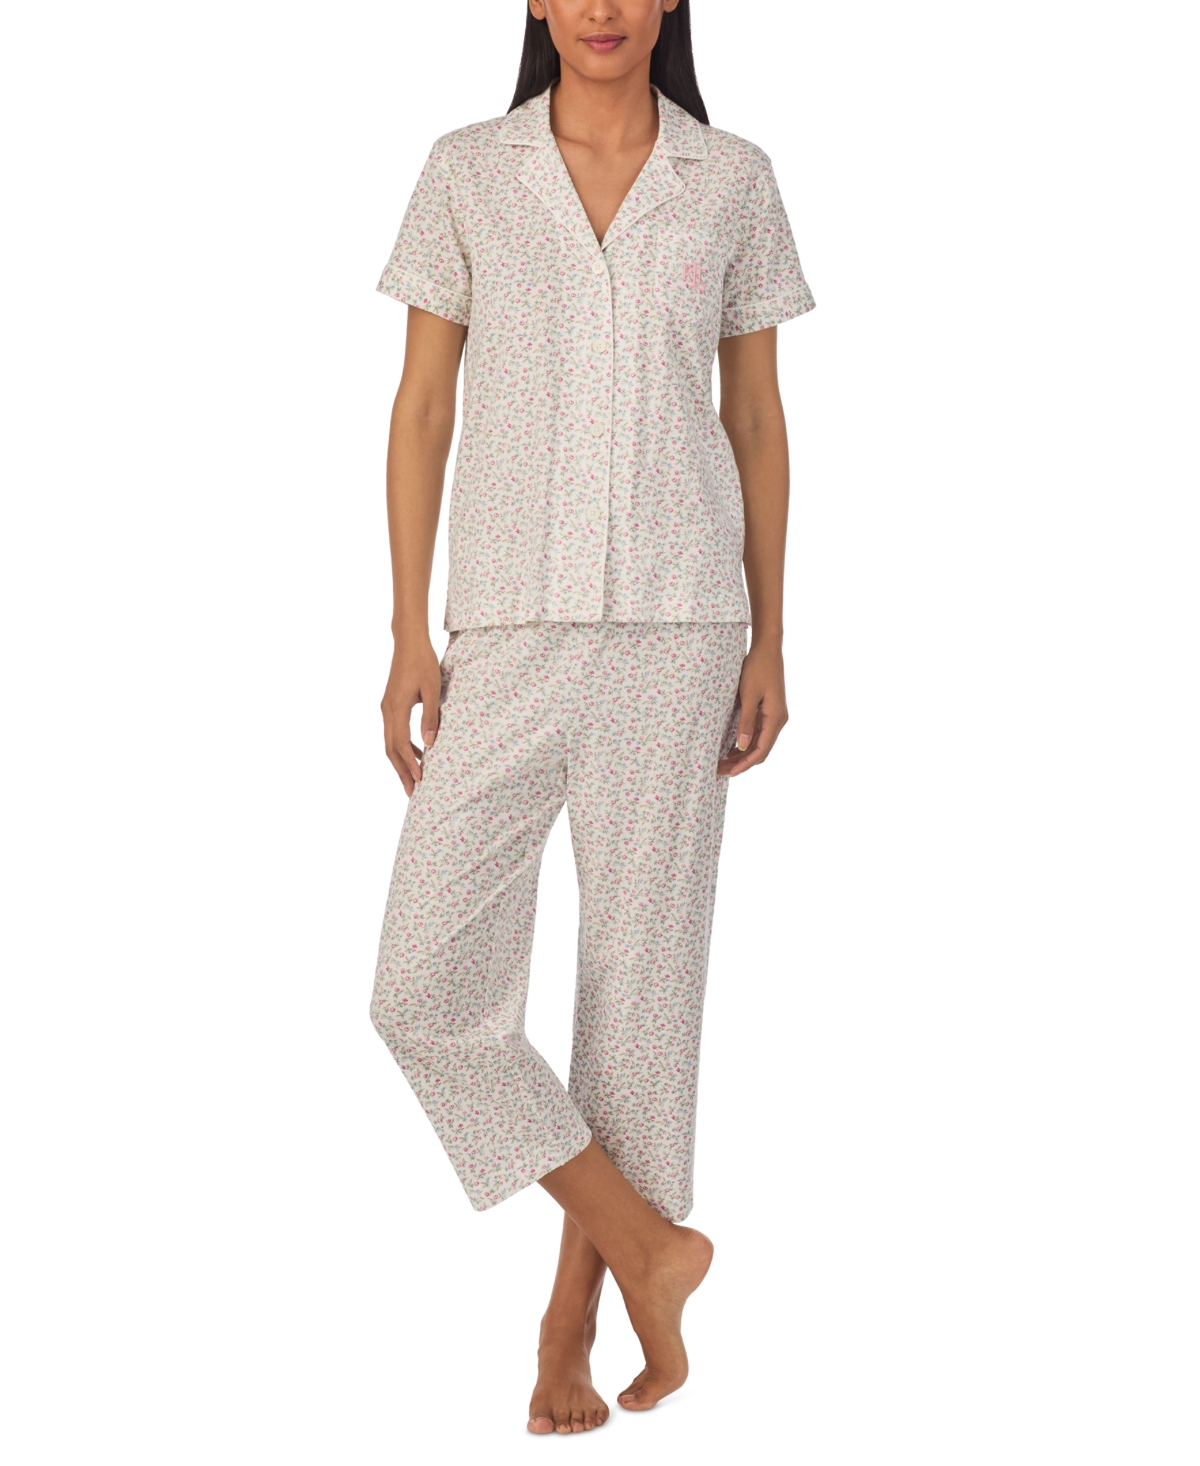 Women's 2-Pc. Printed Capri Pajamas Set - Navy Print